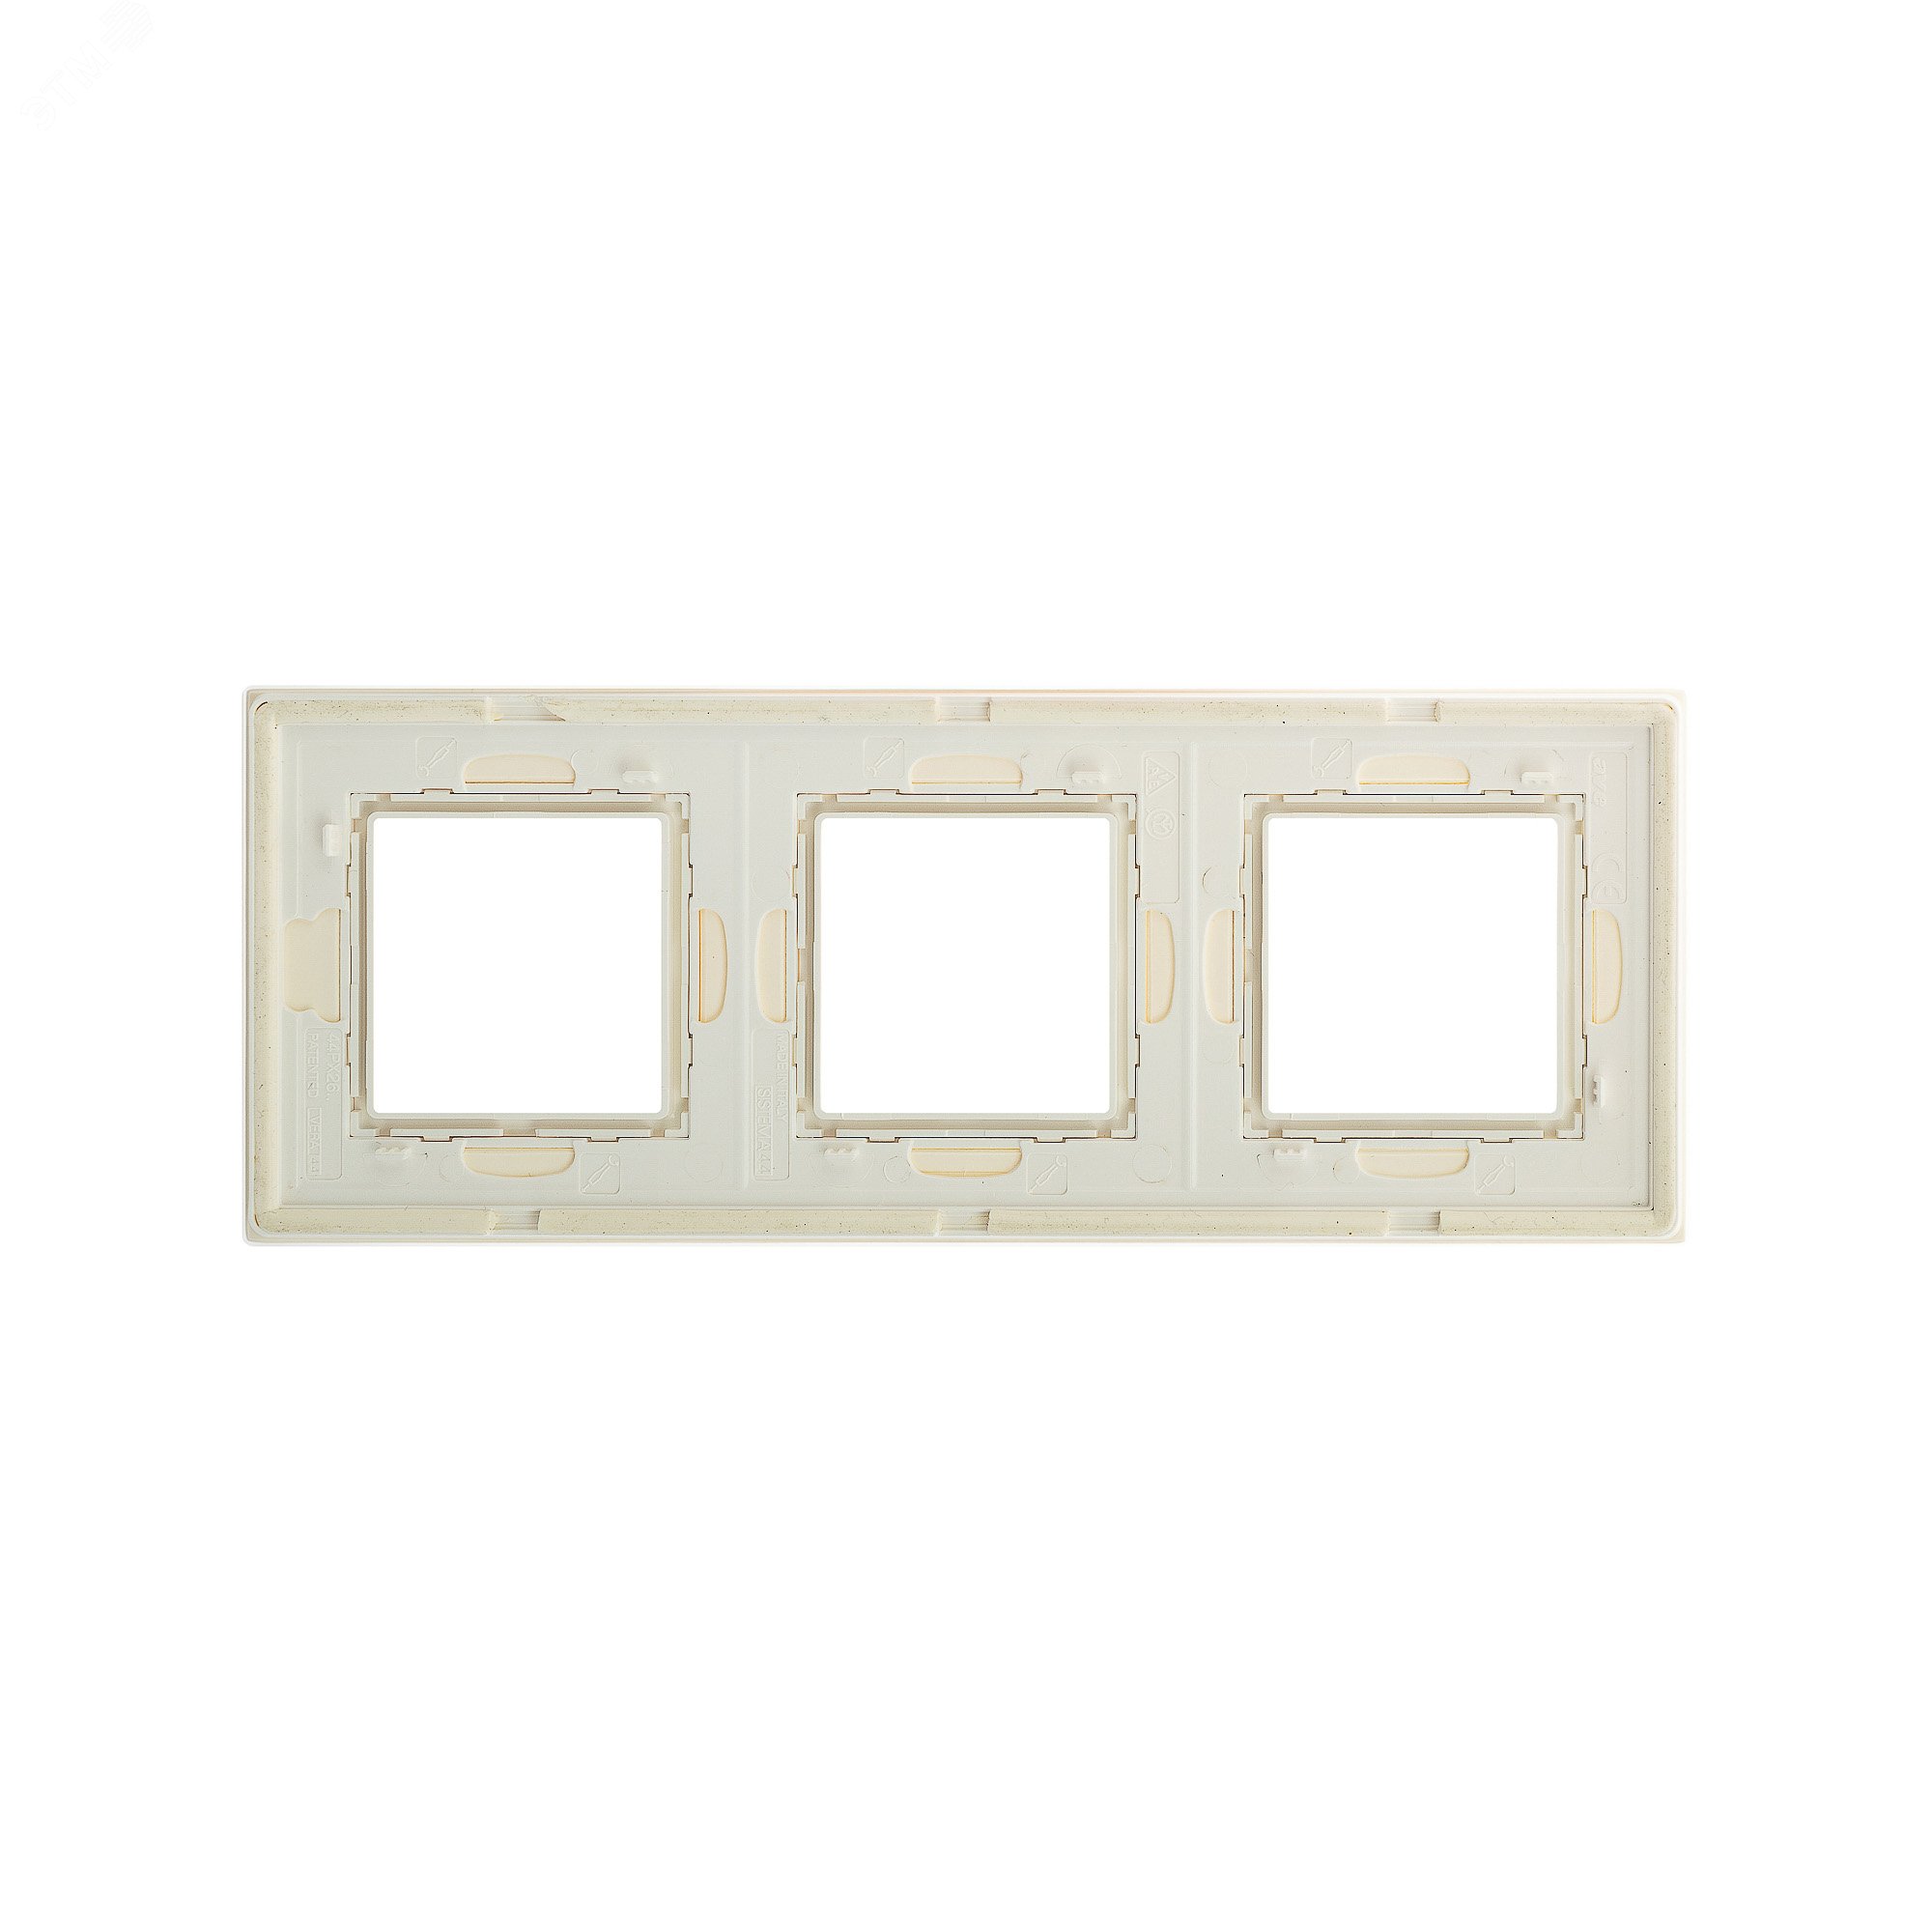 Рамка из натурального стекла, ''Avanti'', белая, 6 модулей 4400826 DKC - превью 4